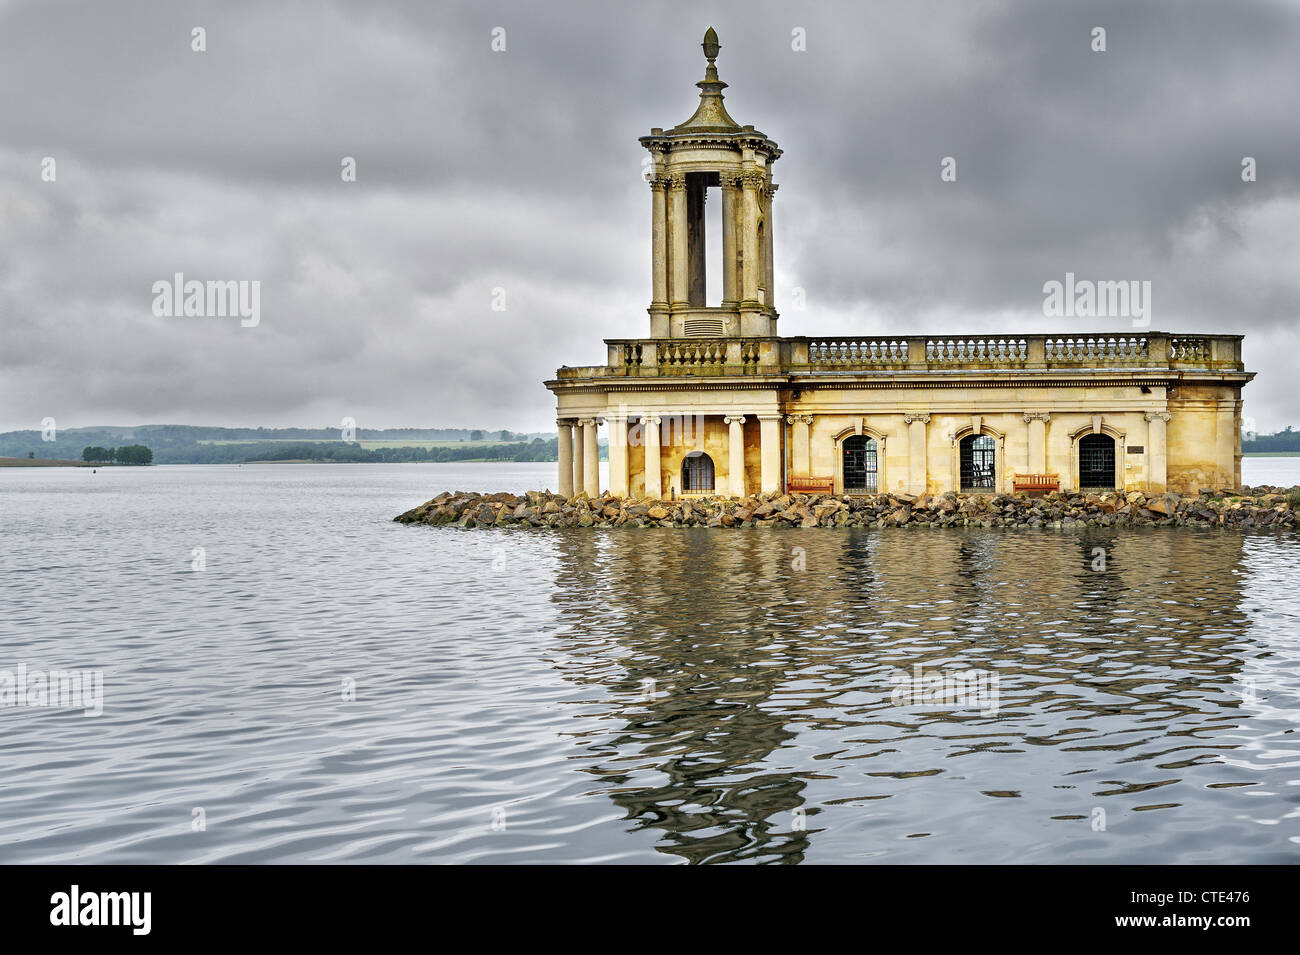 L'église à demi submergé sur une presqu'île dans un lac Banque D'Images